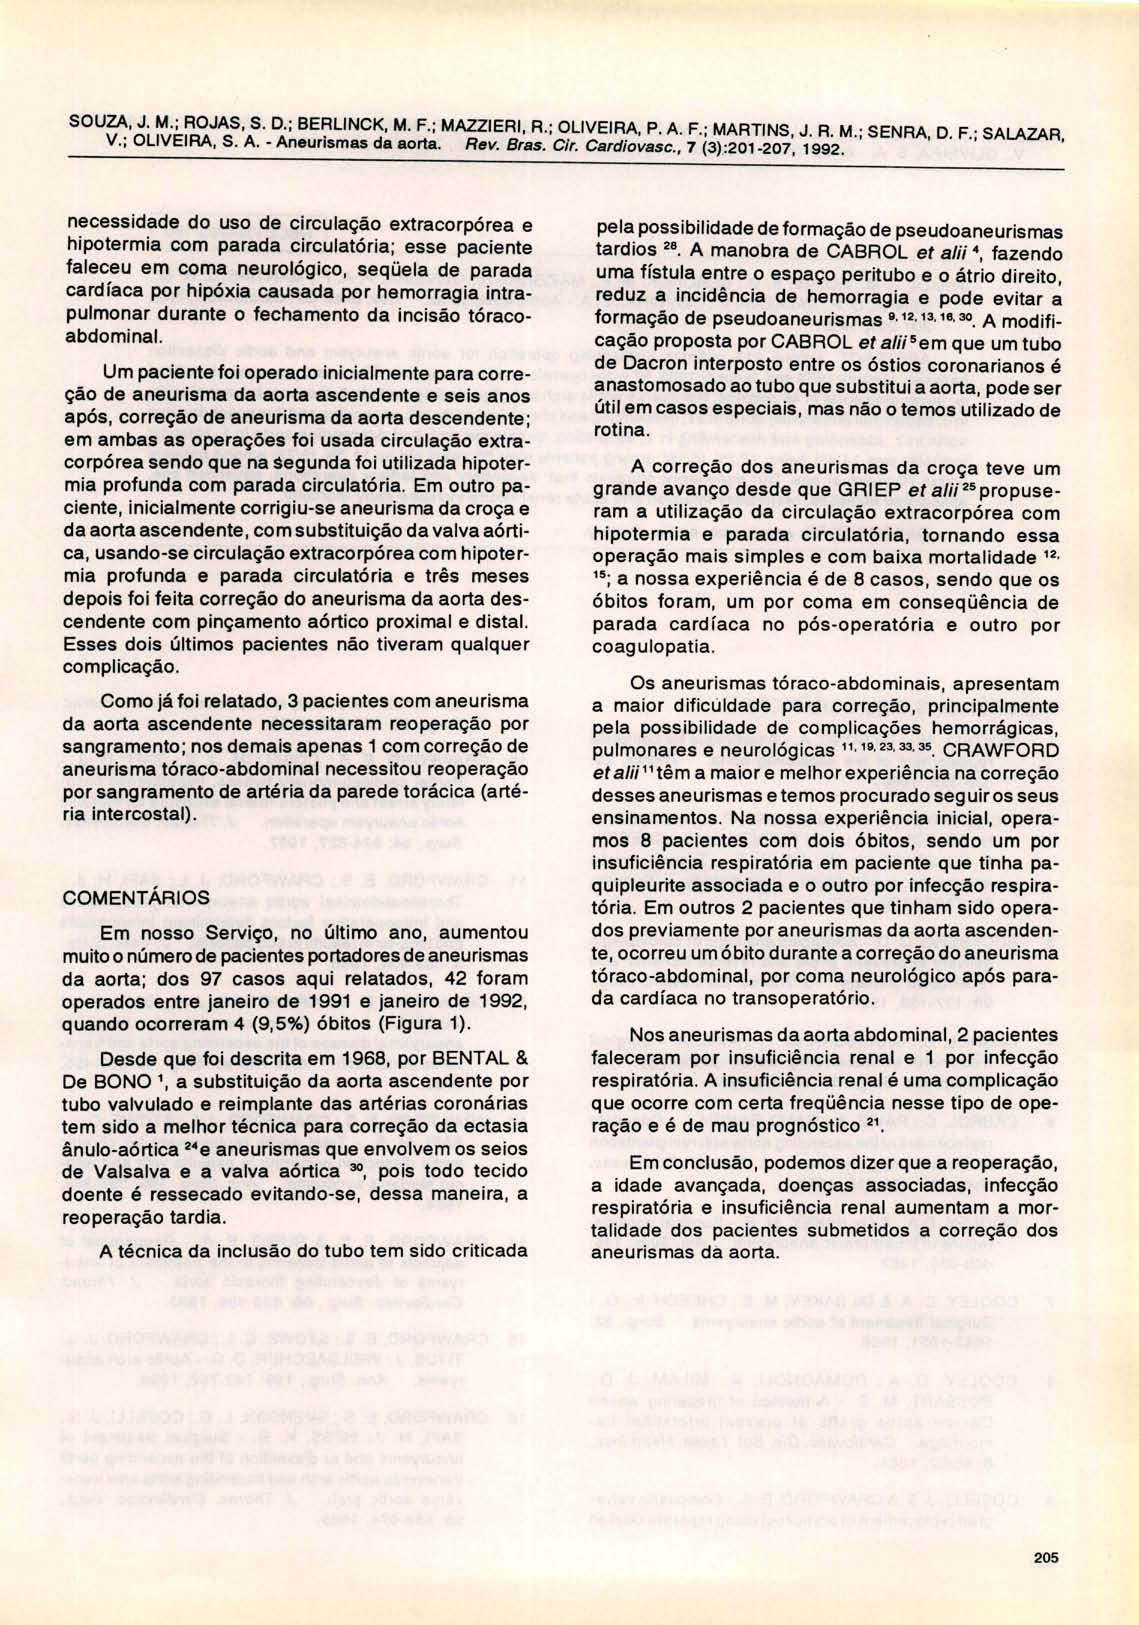 SOUZA, J. M.; ROJAS, S. D.; BERLlNCK, M. F.; MAZZIERI, R.; OLIVEIRA, P. A. F.; MARTINS, J. R. M.; SENRA, D. F.; SALAZAR, V.; OLIVEIRA, S. A. - Aneurismas da aorta. Rev. Bras. Cir. Cardiovasc.